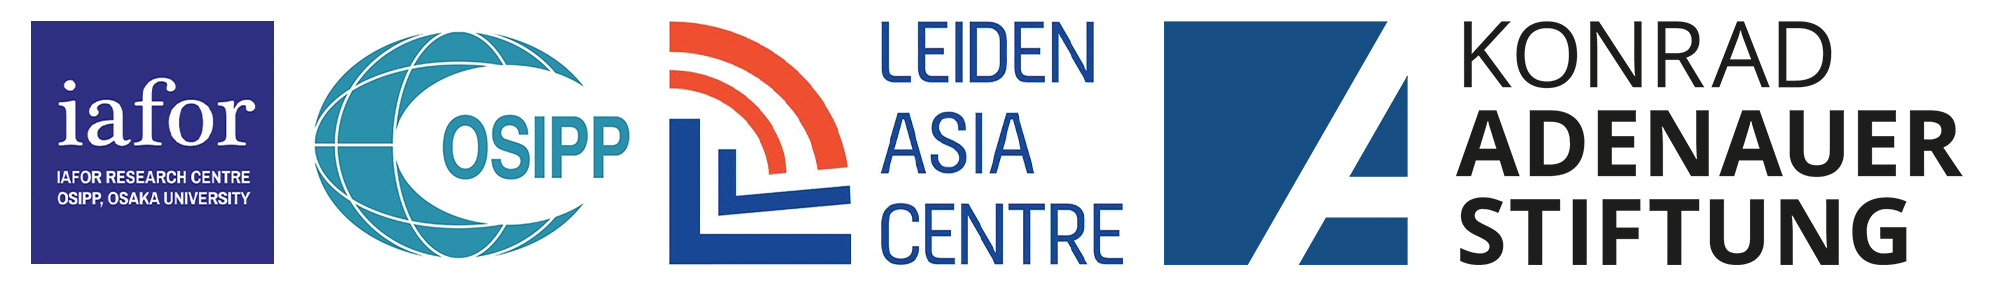 IAFOR Research Centre, OSIPP, Leiden Asia Centre, Konrad Adenauer Stiftung